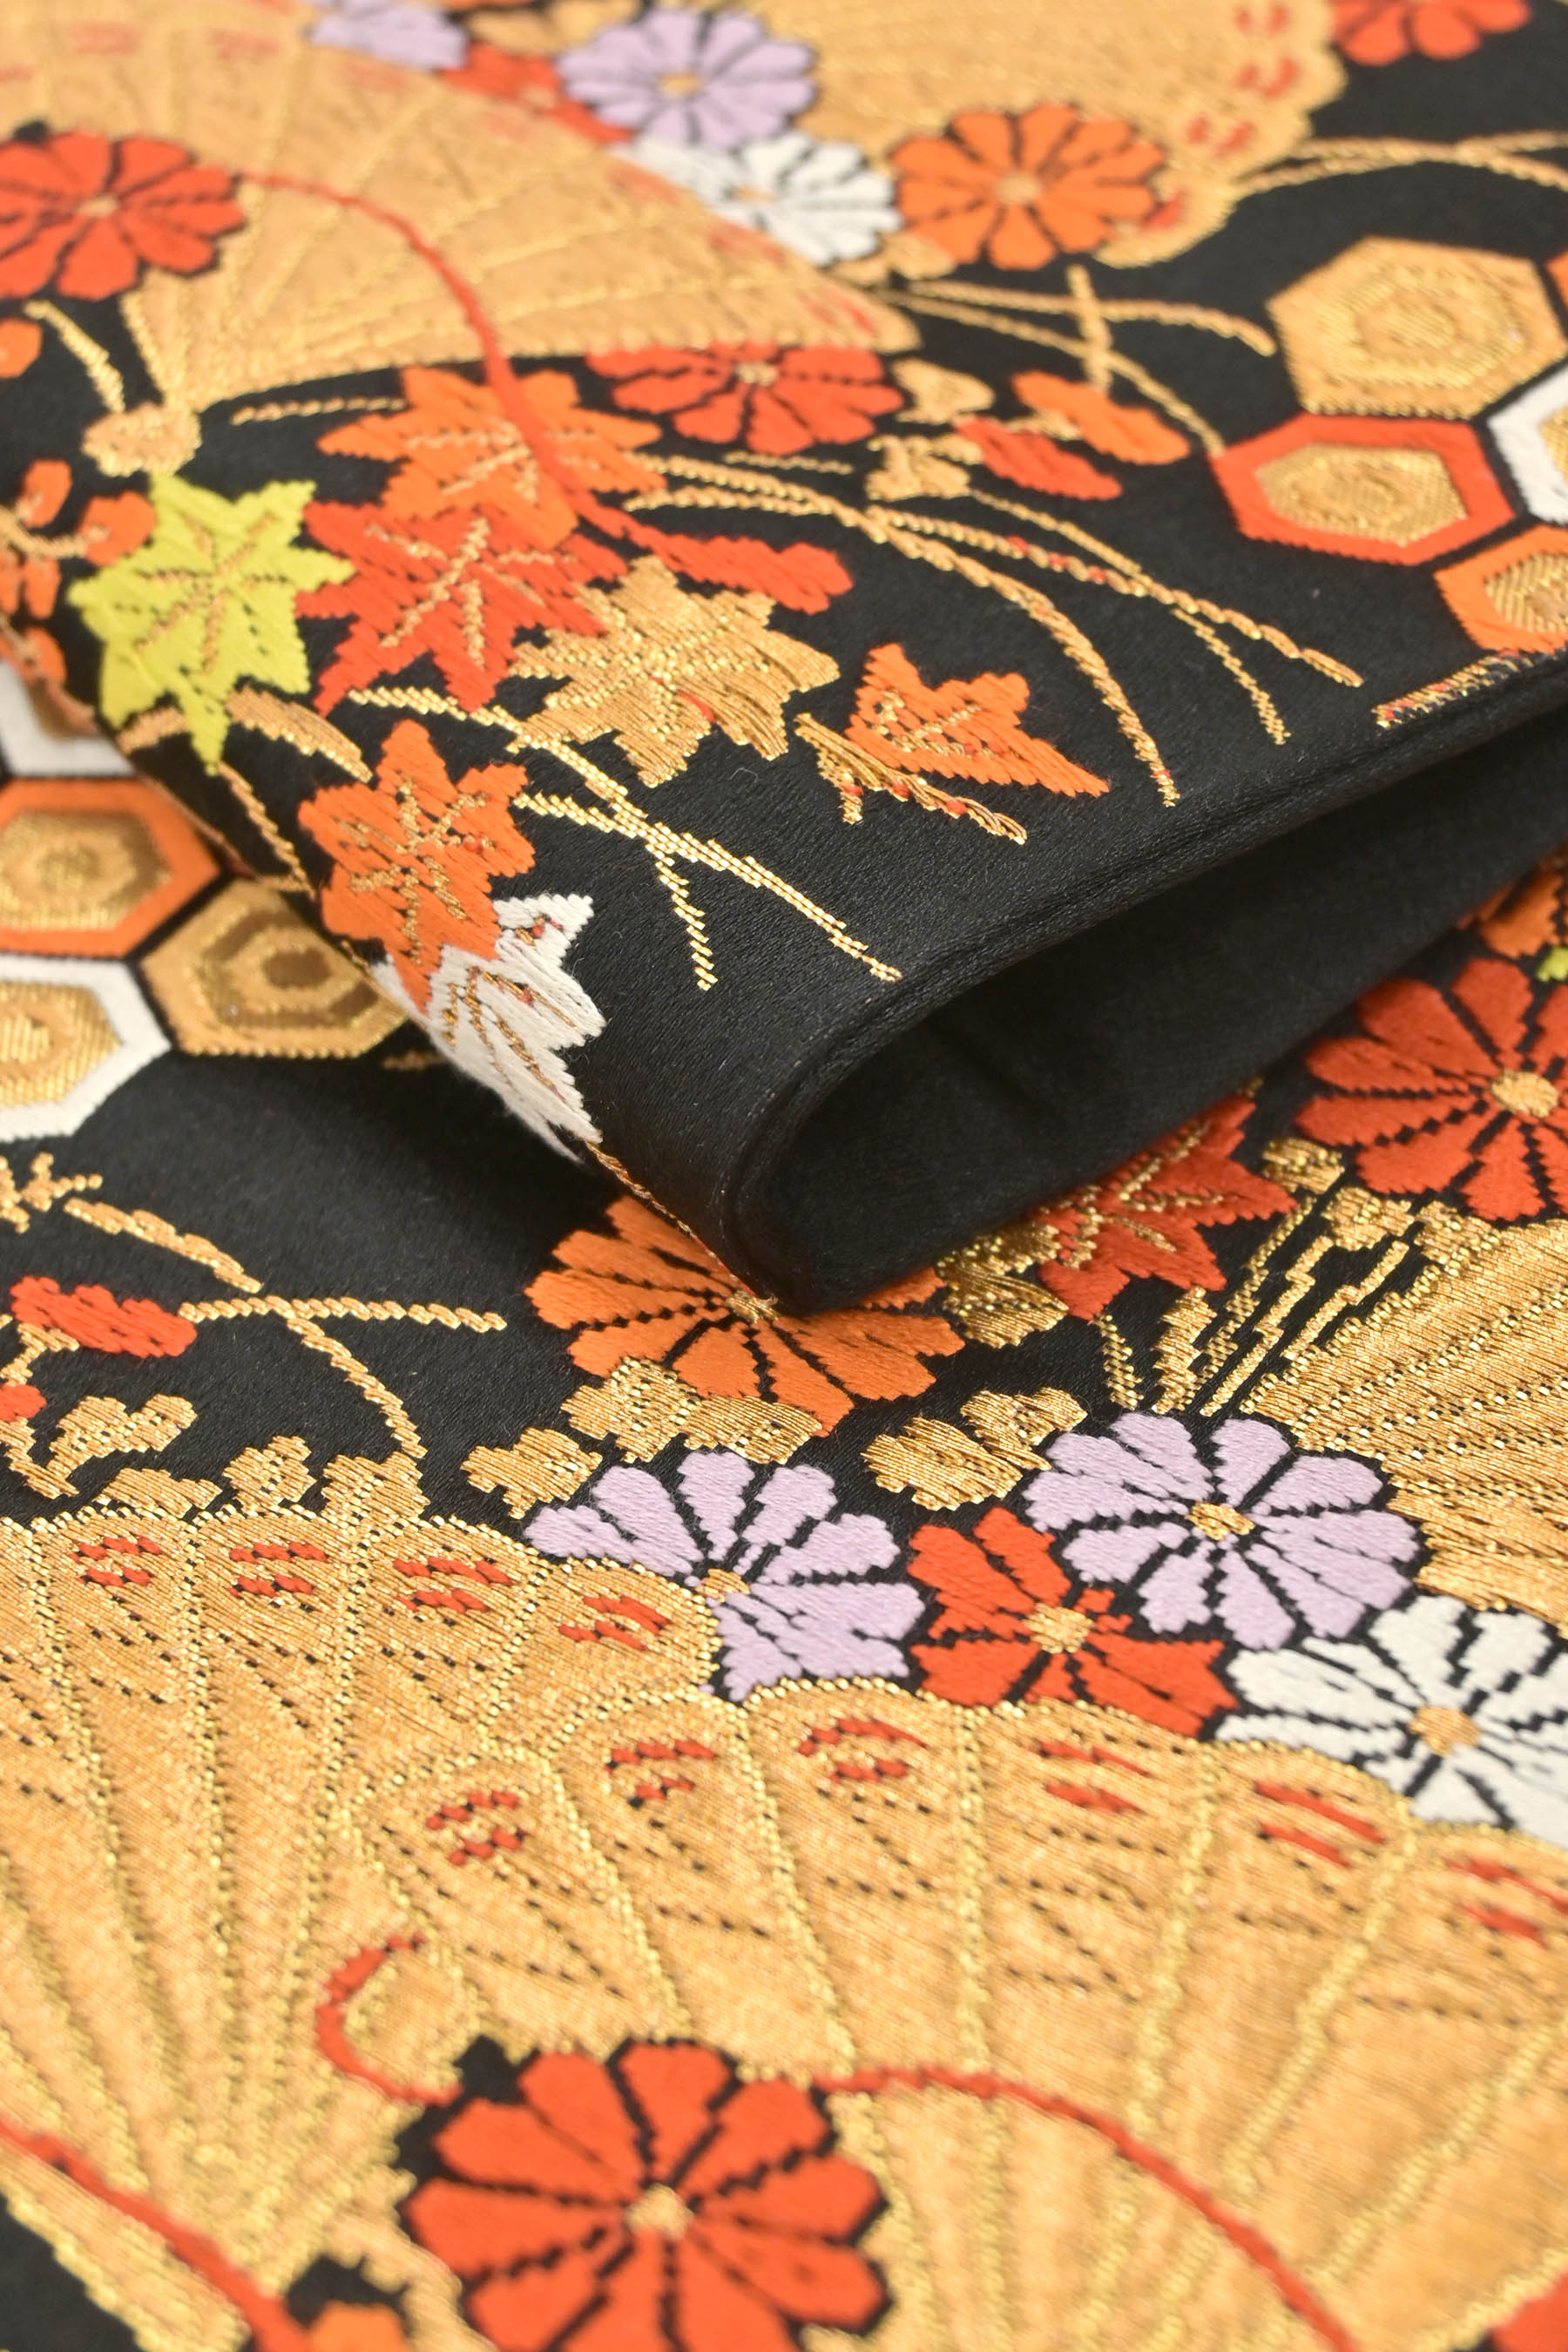 商品詳細 - 【お振袖に】フォーマル袋帯「亀甲花扇文」 京都きもの市場